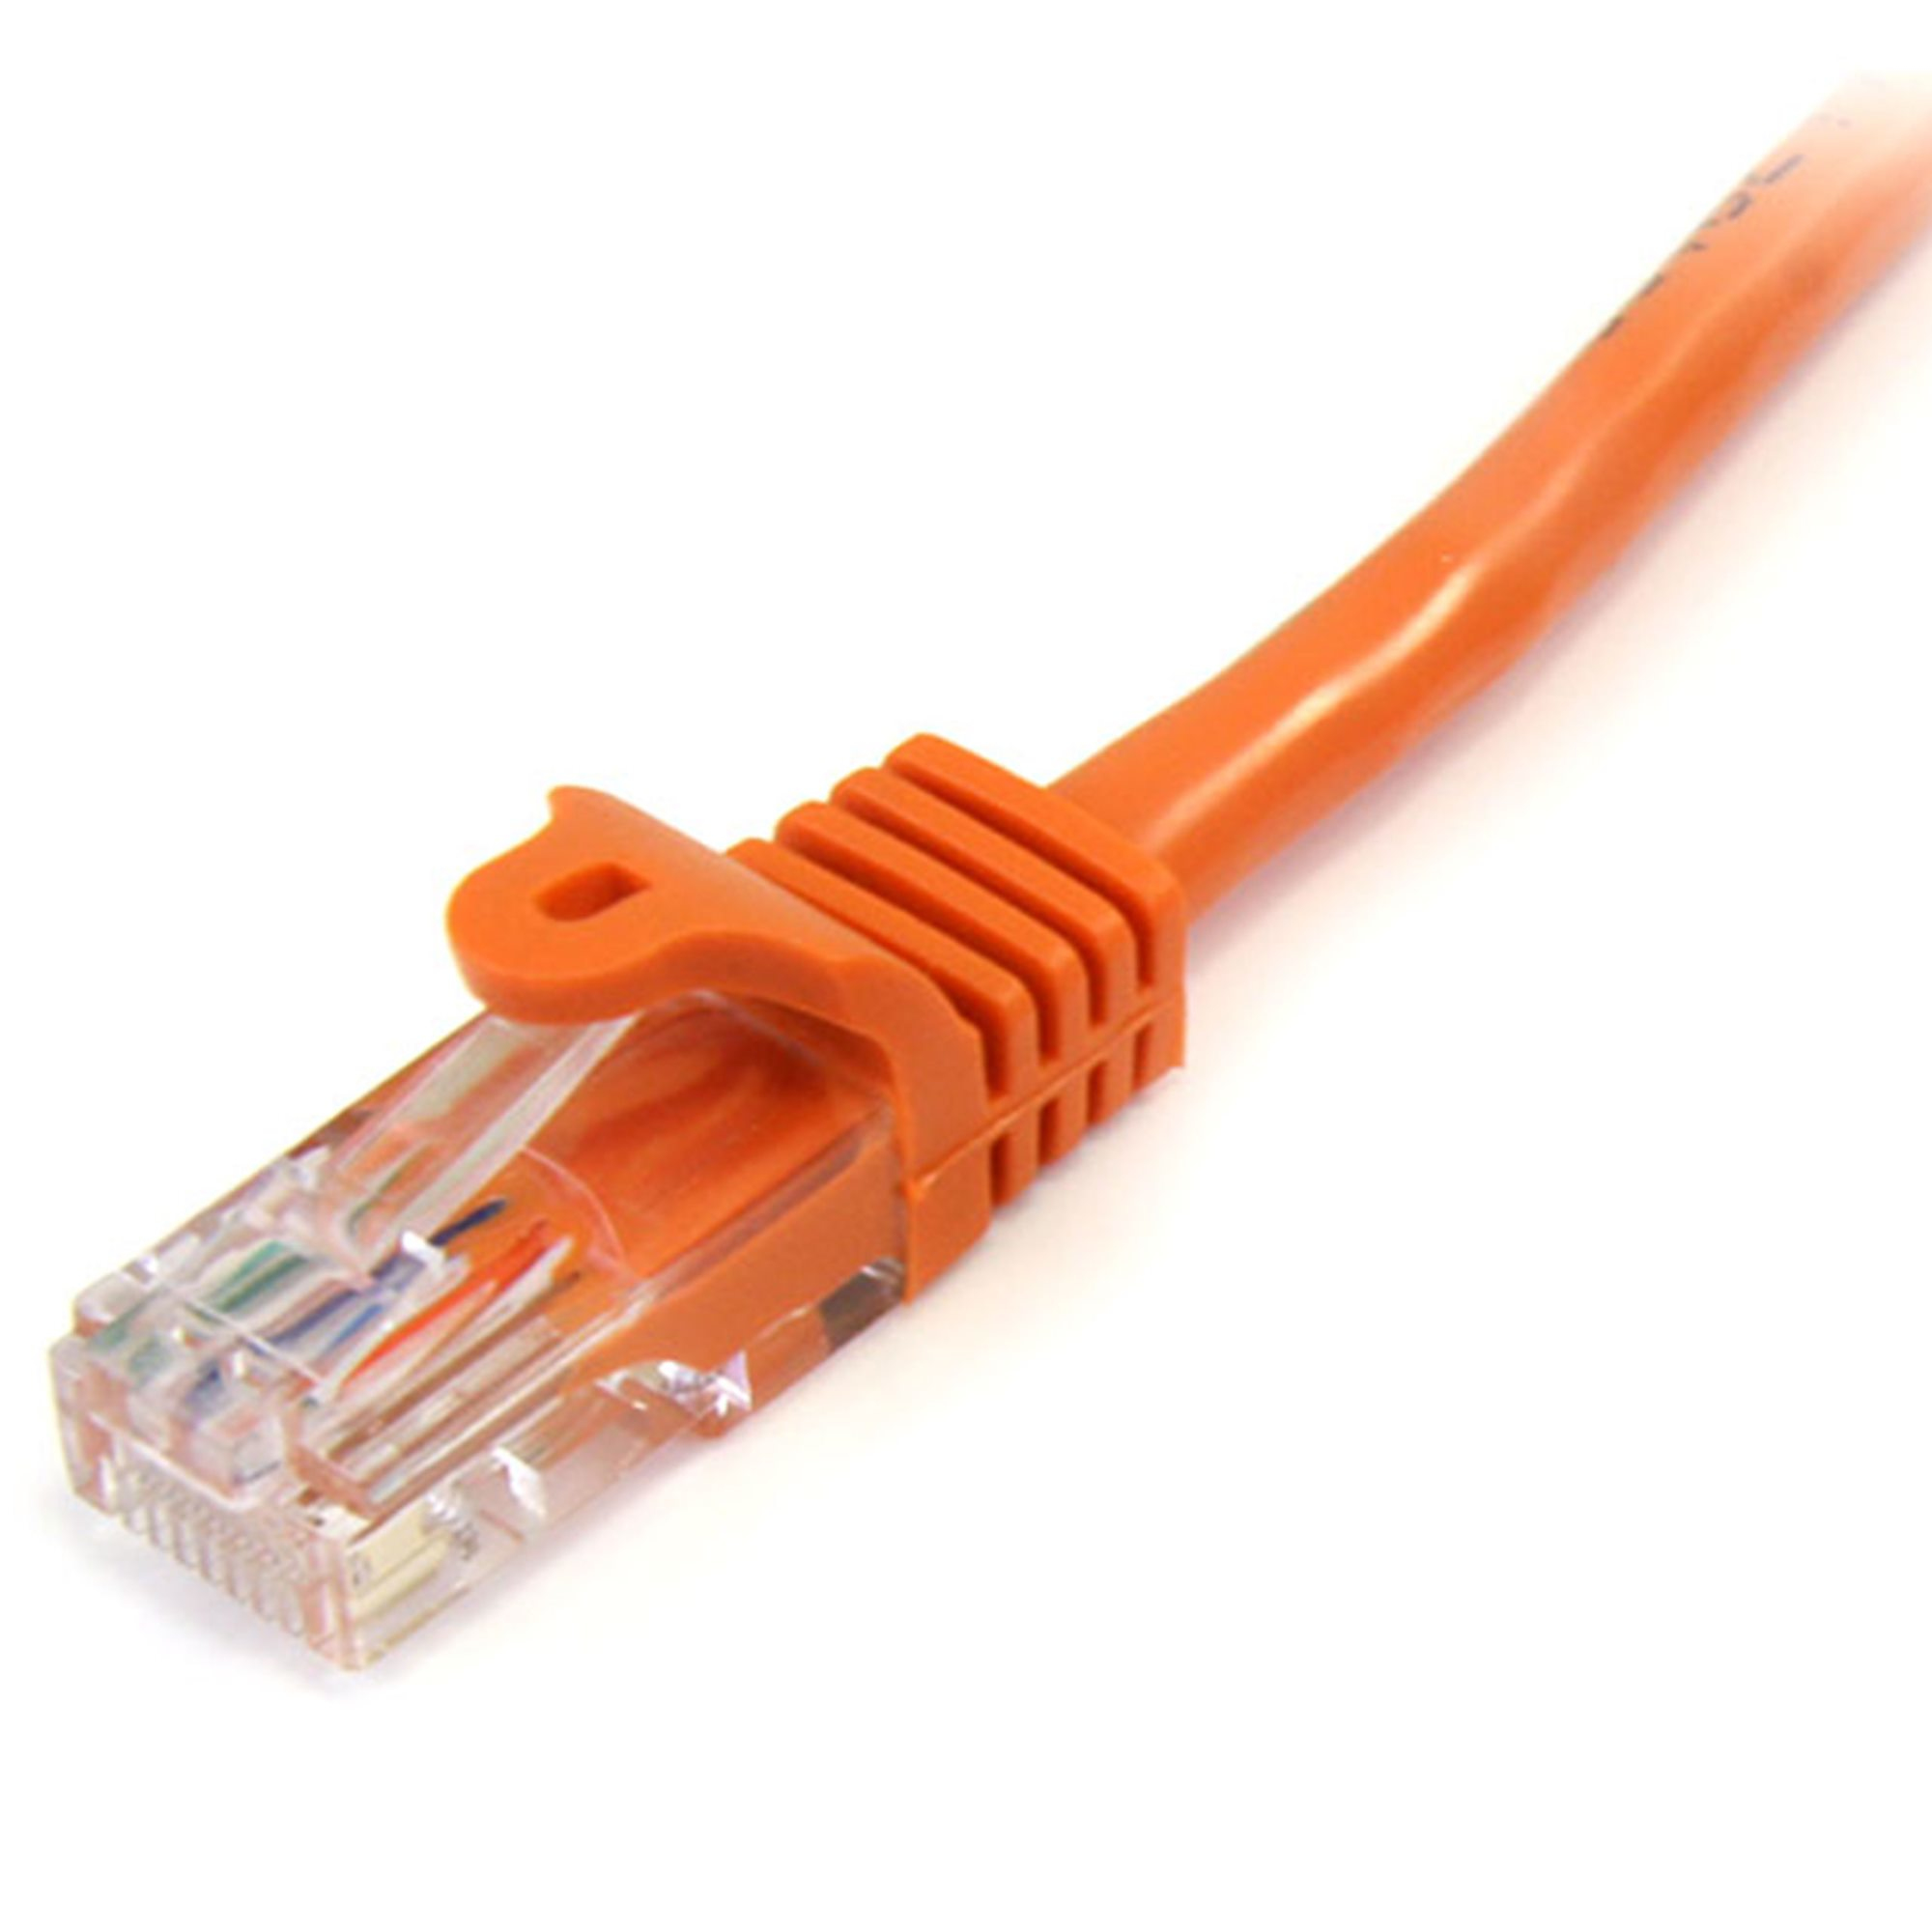 StarTech.com 5m Cat5e Ethernet Netzwerkkabel Snagless mit RJ45 - Cat 5e UTP Kabel - Orange - Patch-Kabel - RJ-45 (M)